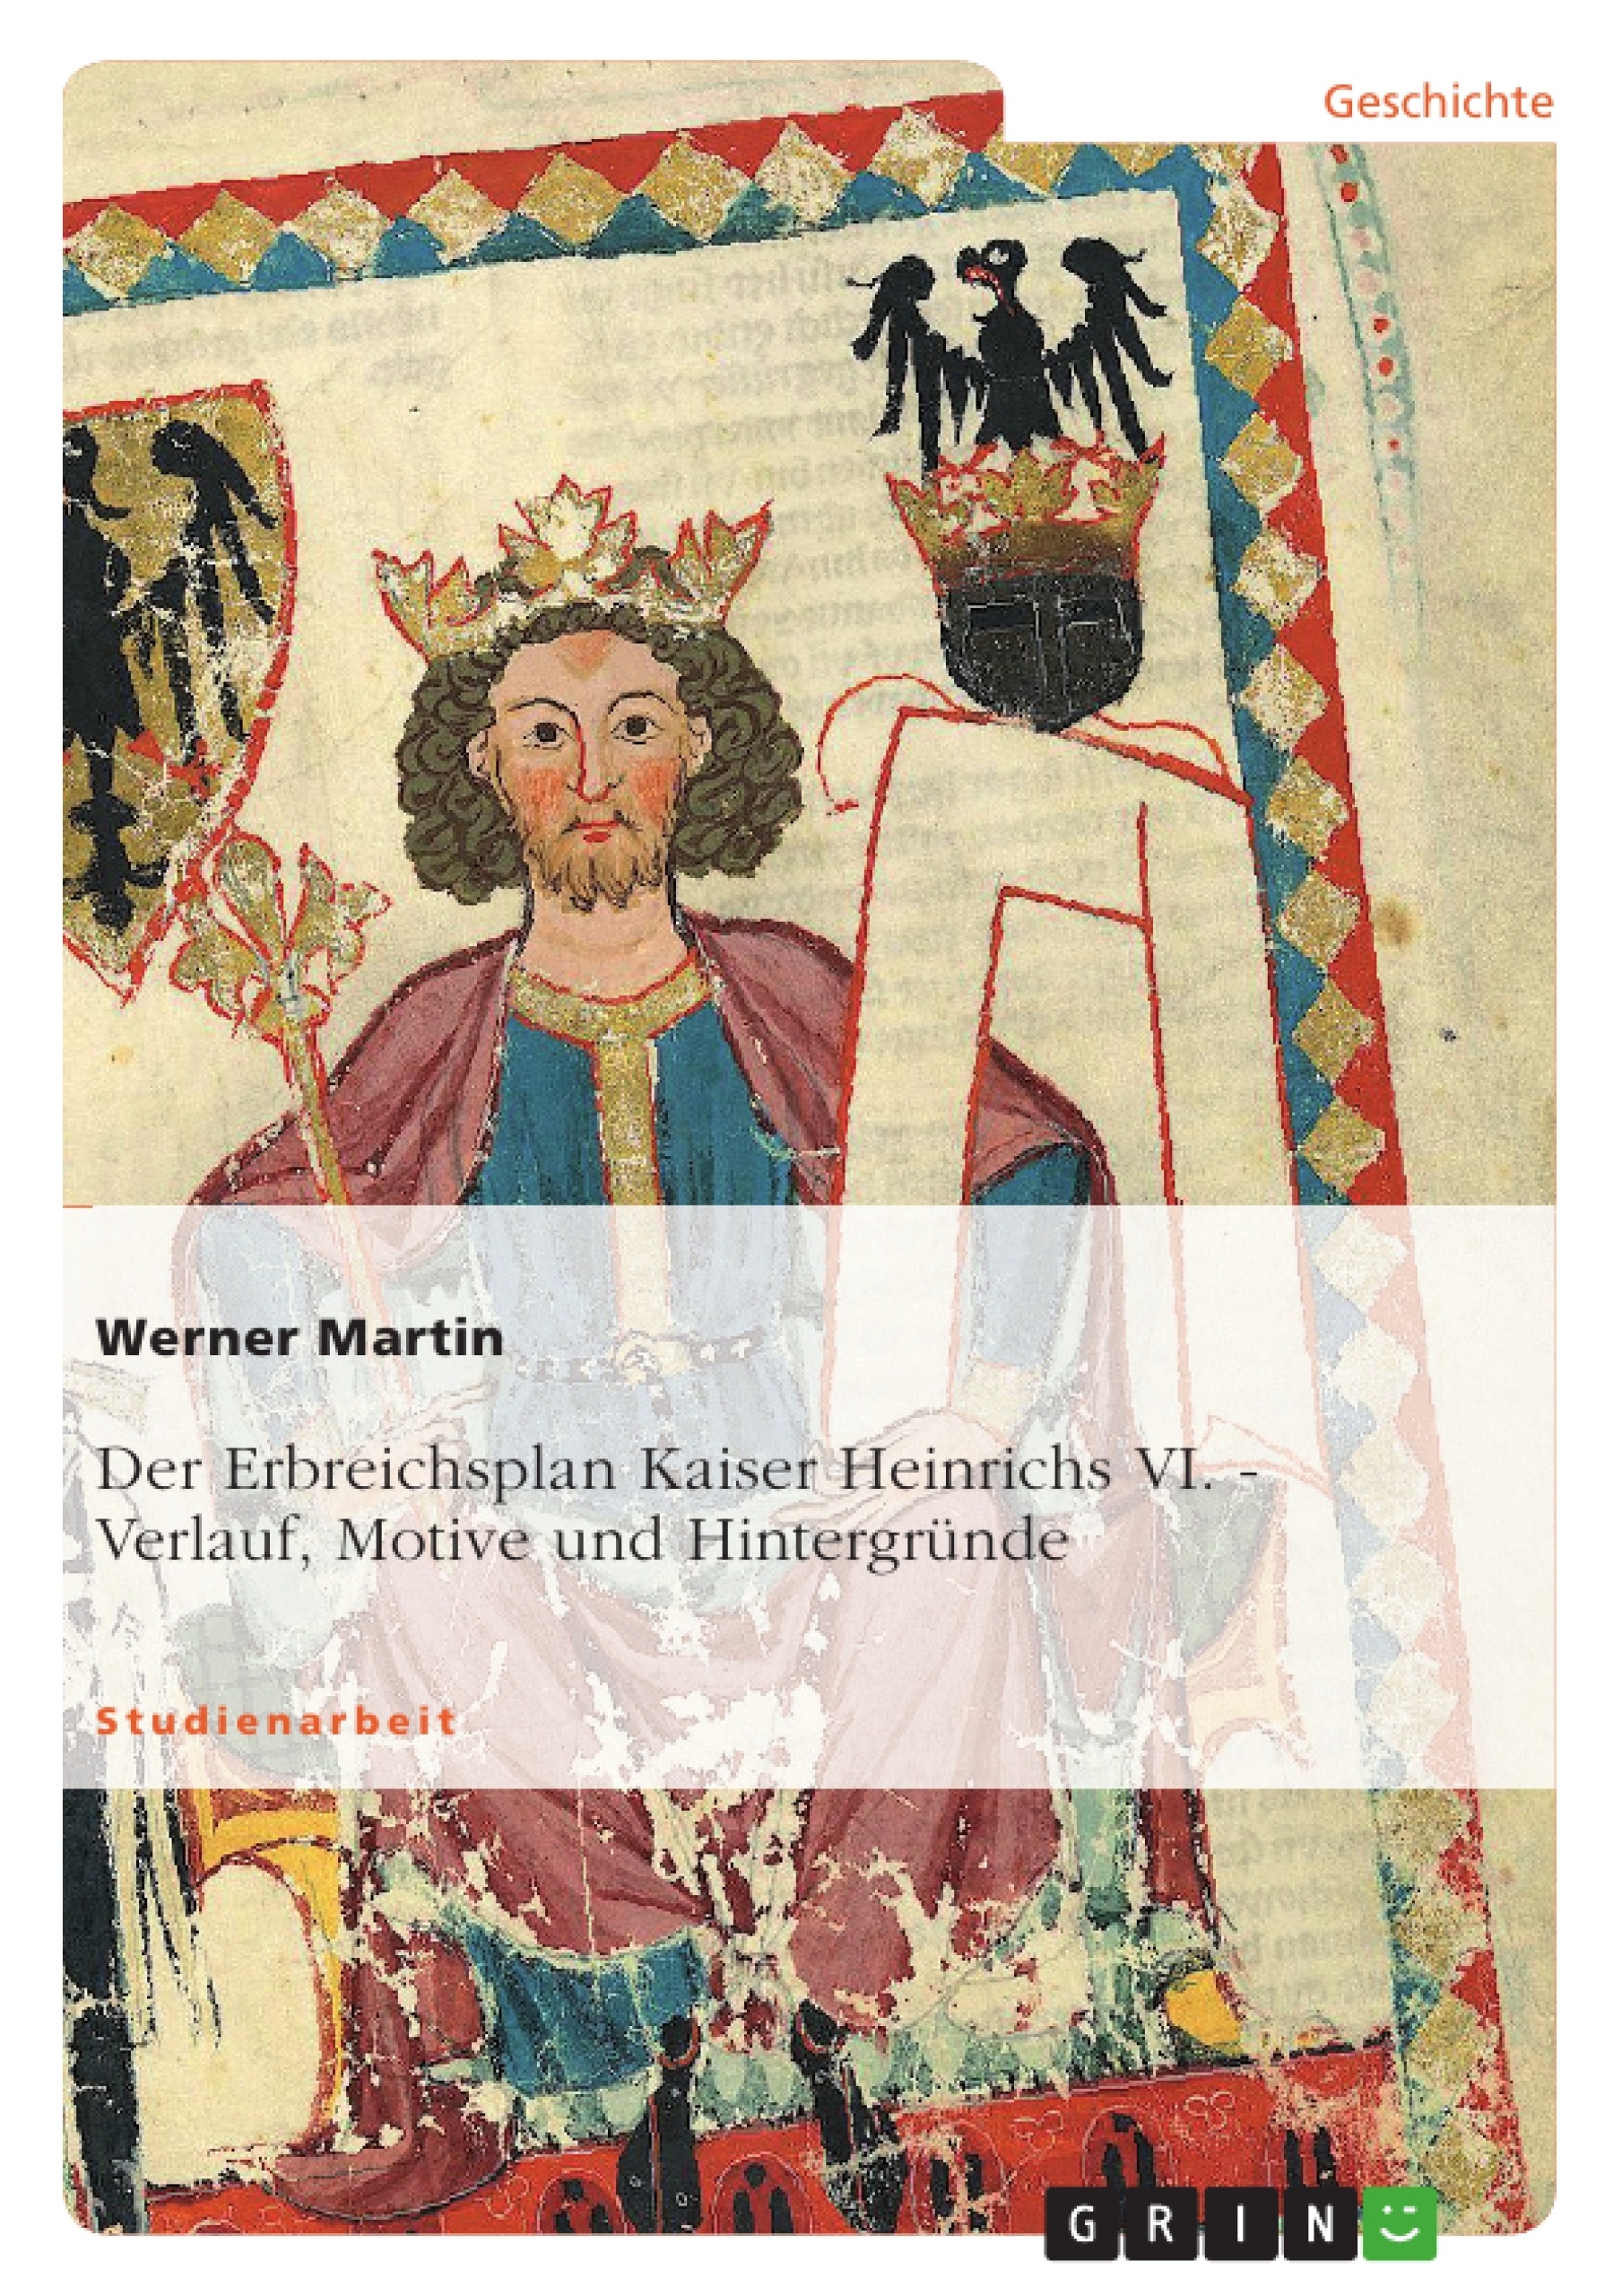 Título: Der Erbreichsplan Kaiser Heinrichs VI.